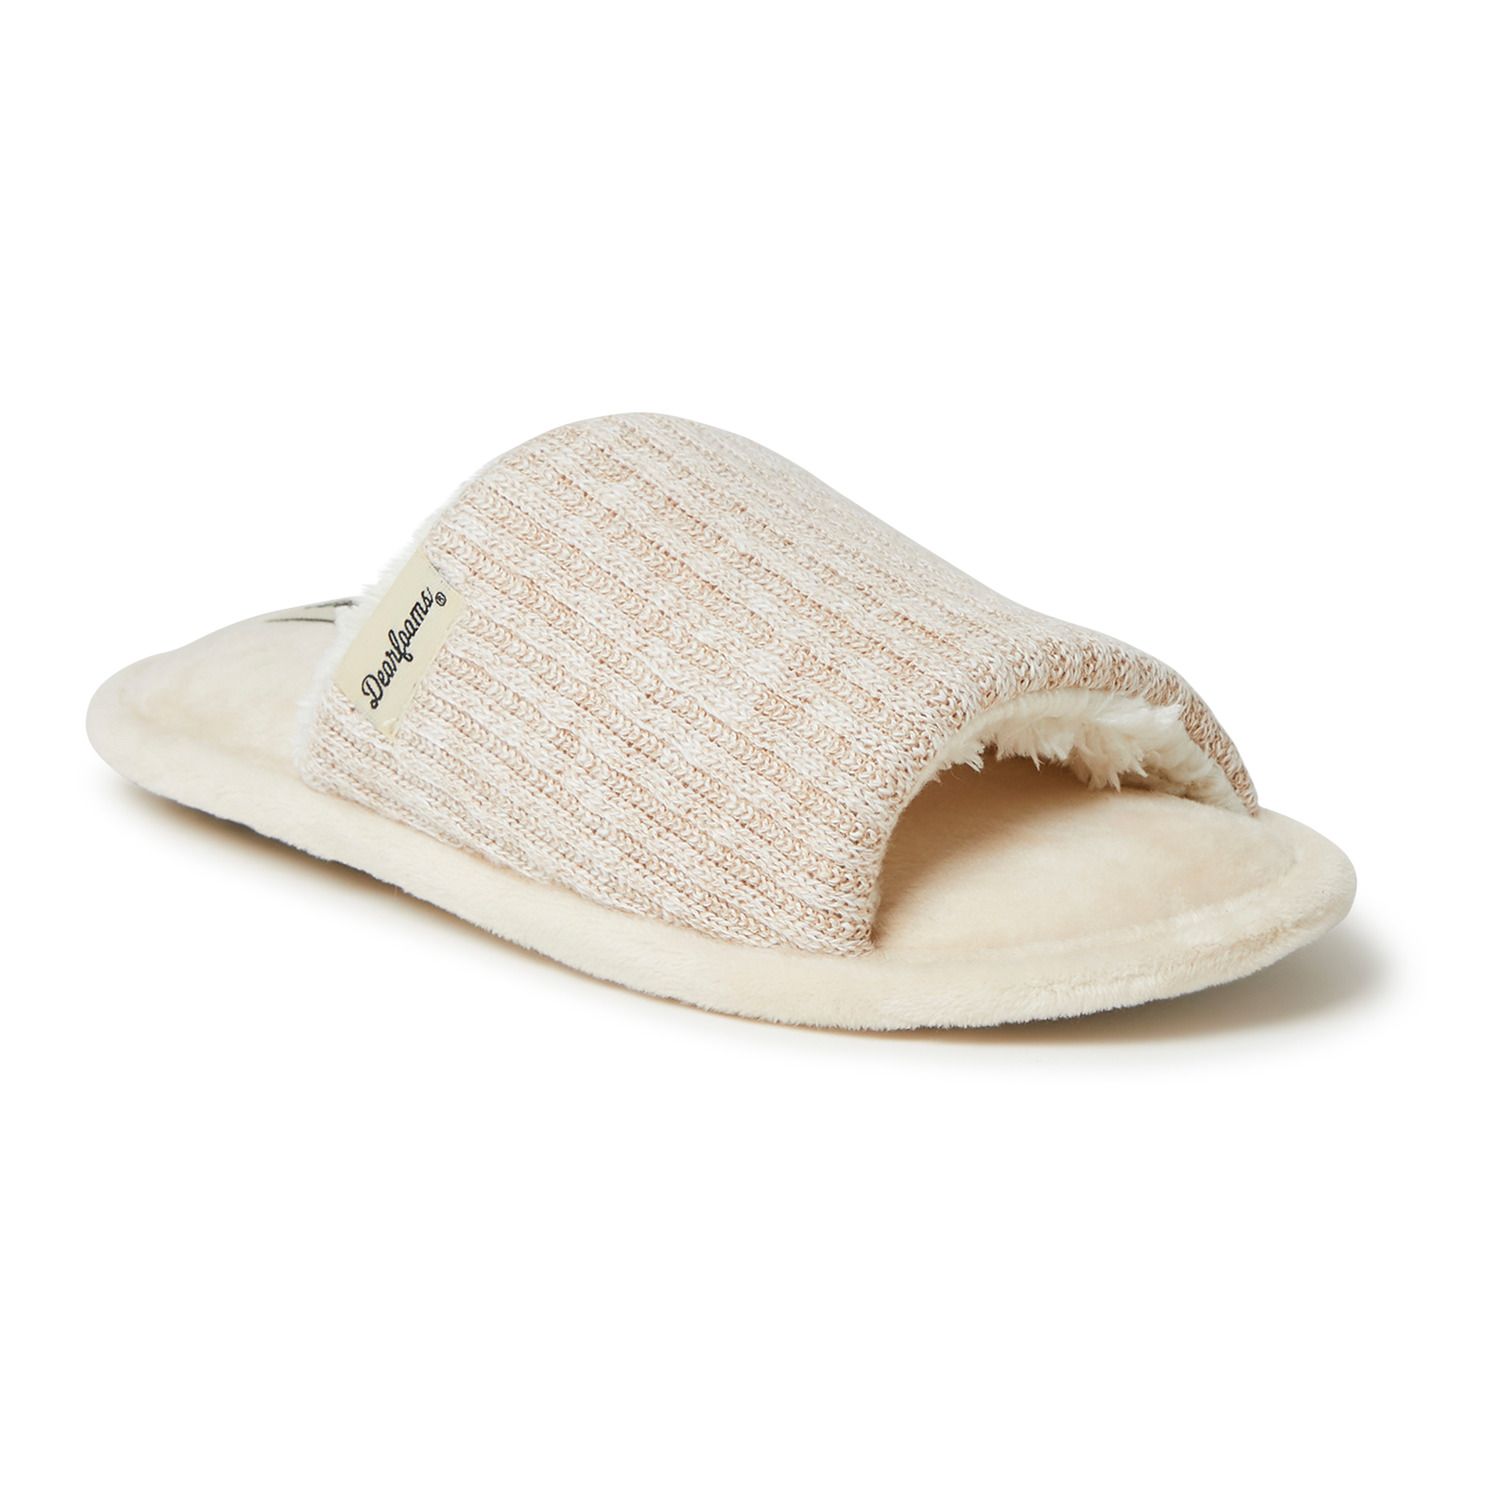 dearfoam slide slippers